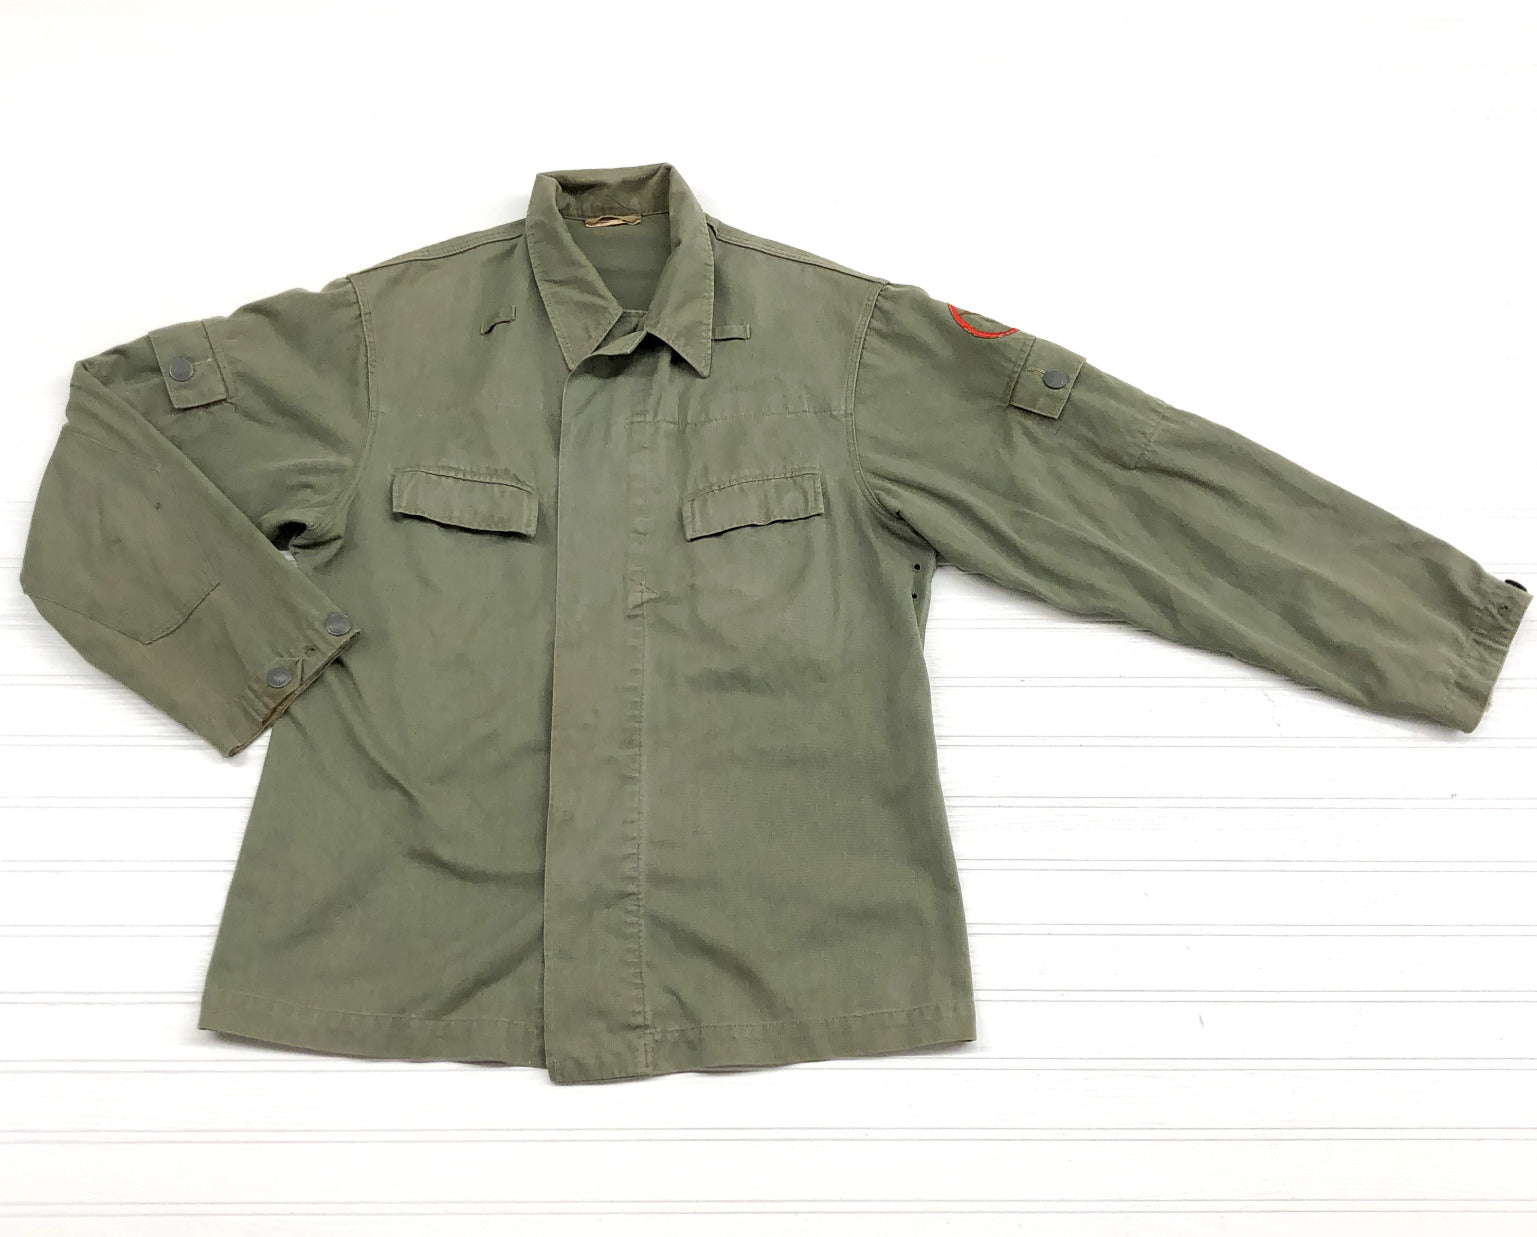 Vintage G-48 Kampfgruppen der Arbeiterklasse Army Green Military Jacket Size S-M